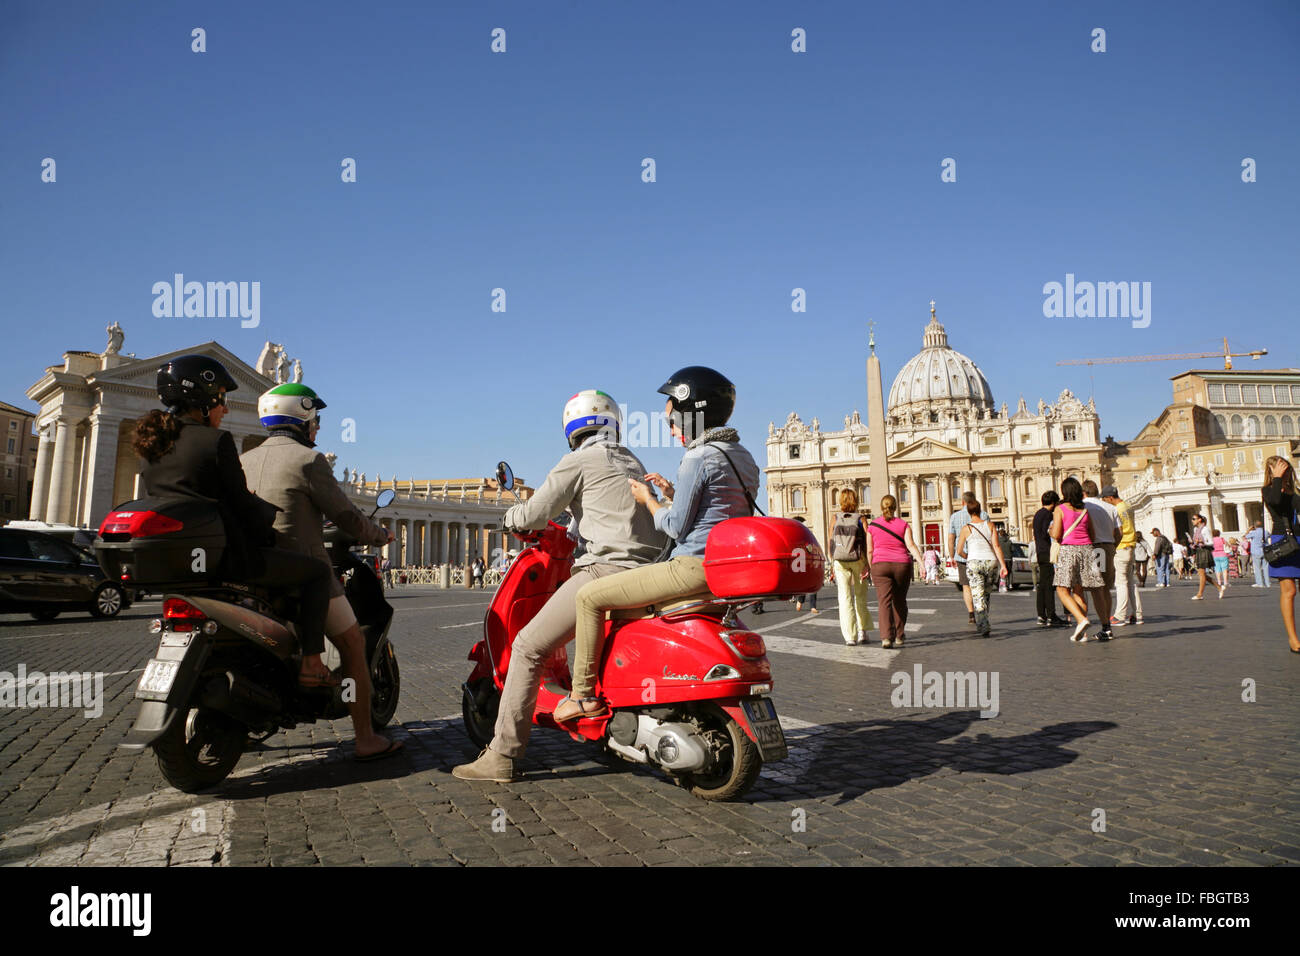 Les gens sur motorscooters près de la Basilica di San Pietro (St. Peter's), Cité du Vatican, Rome, Italie Banque D'Images